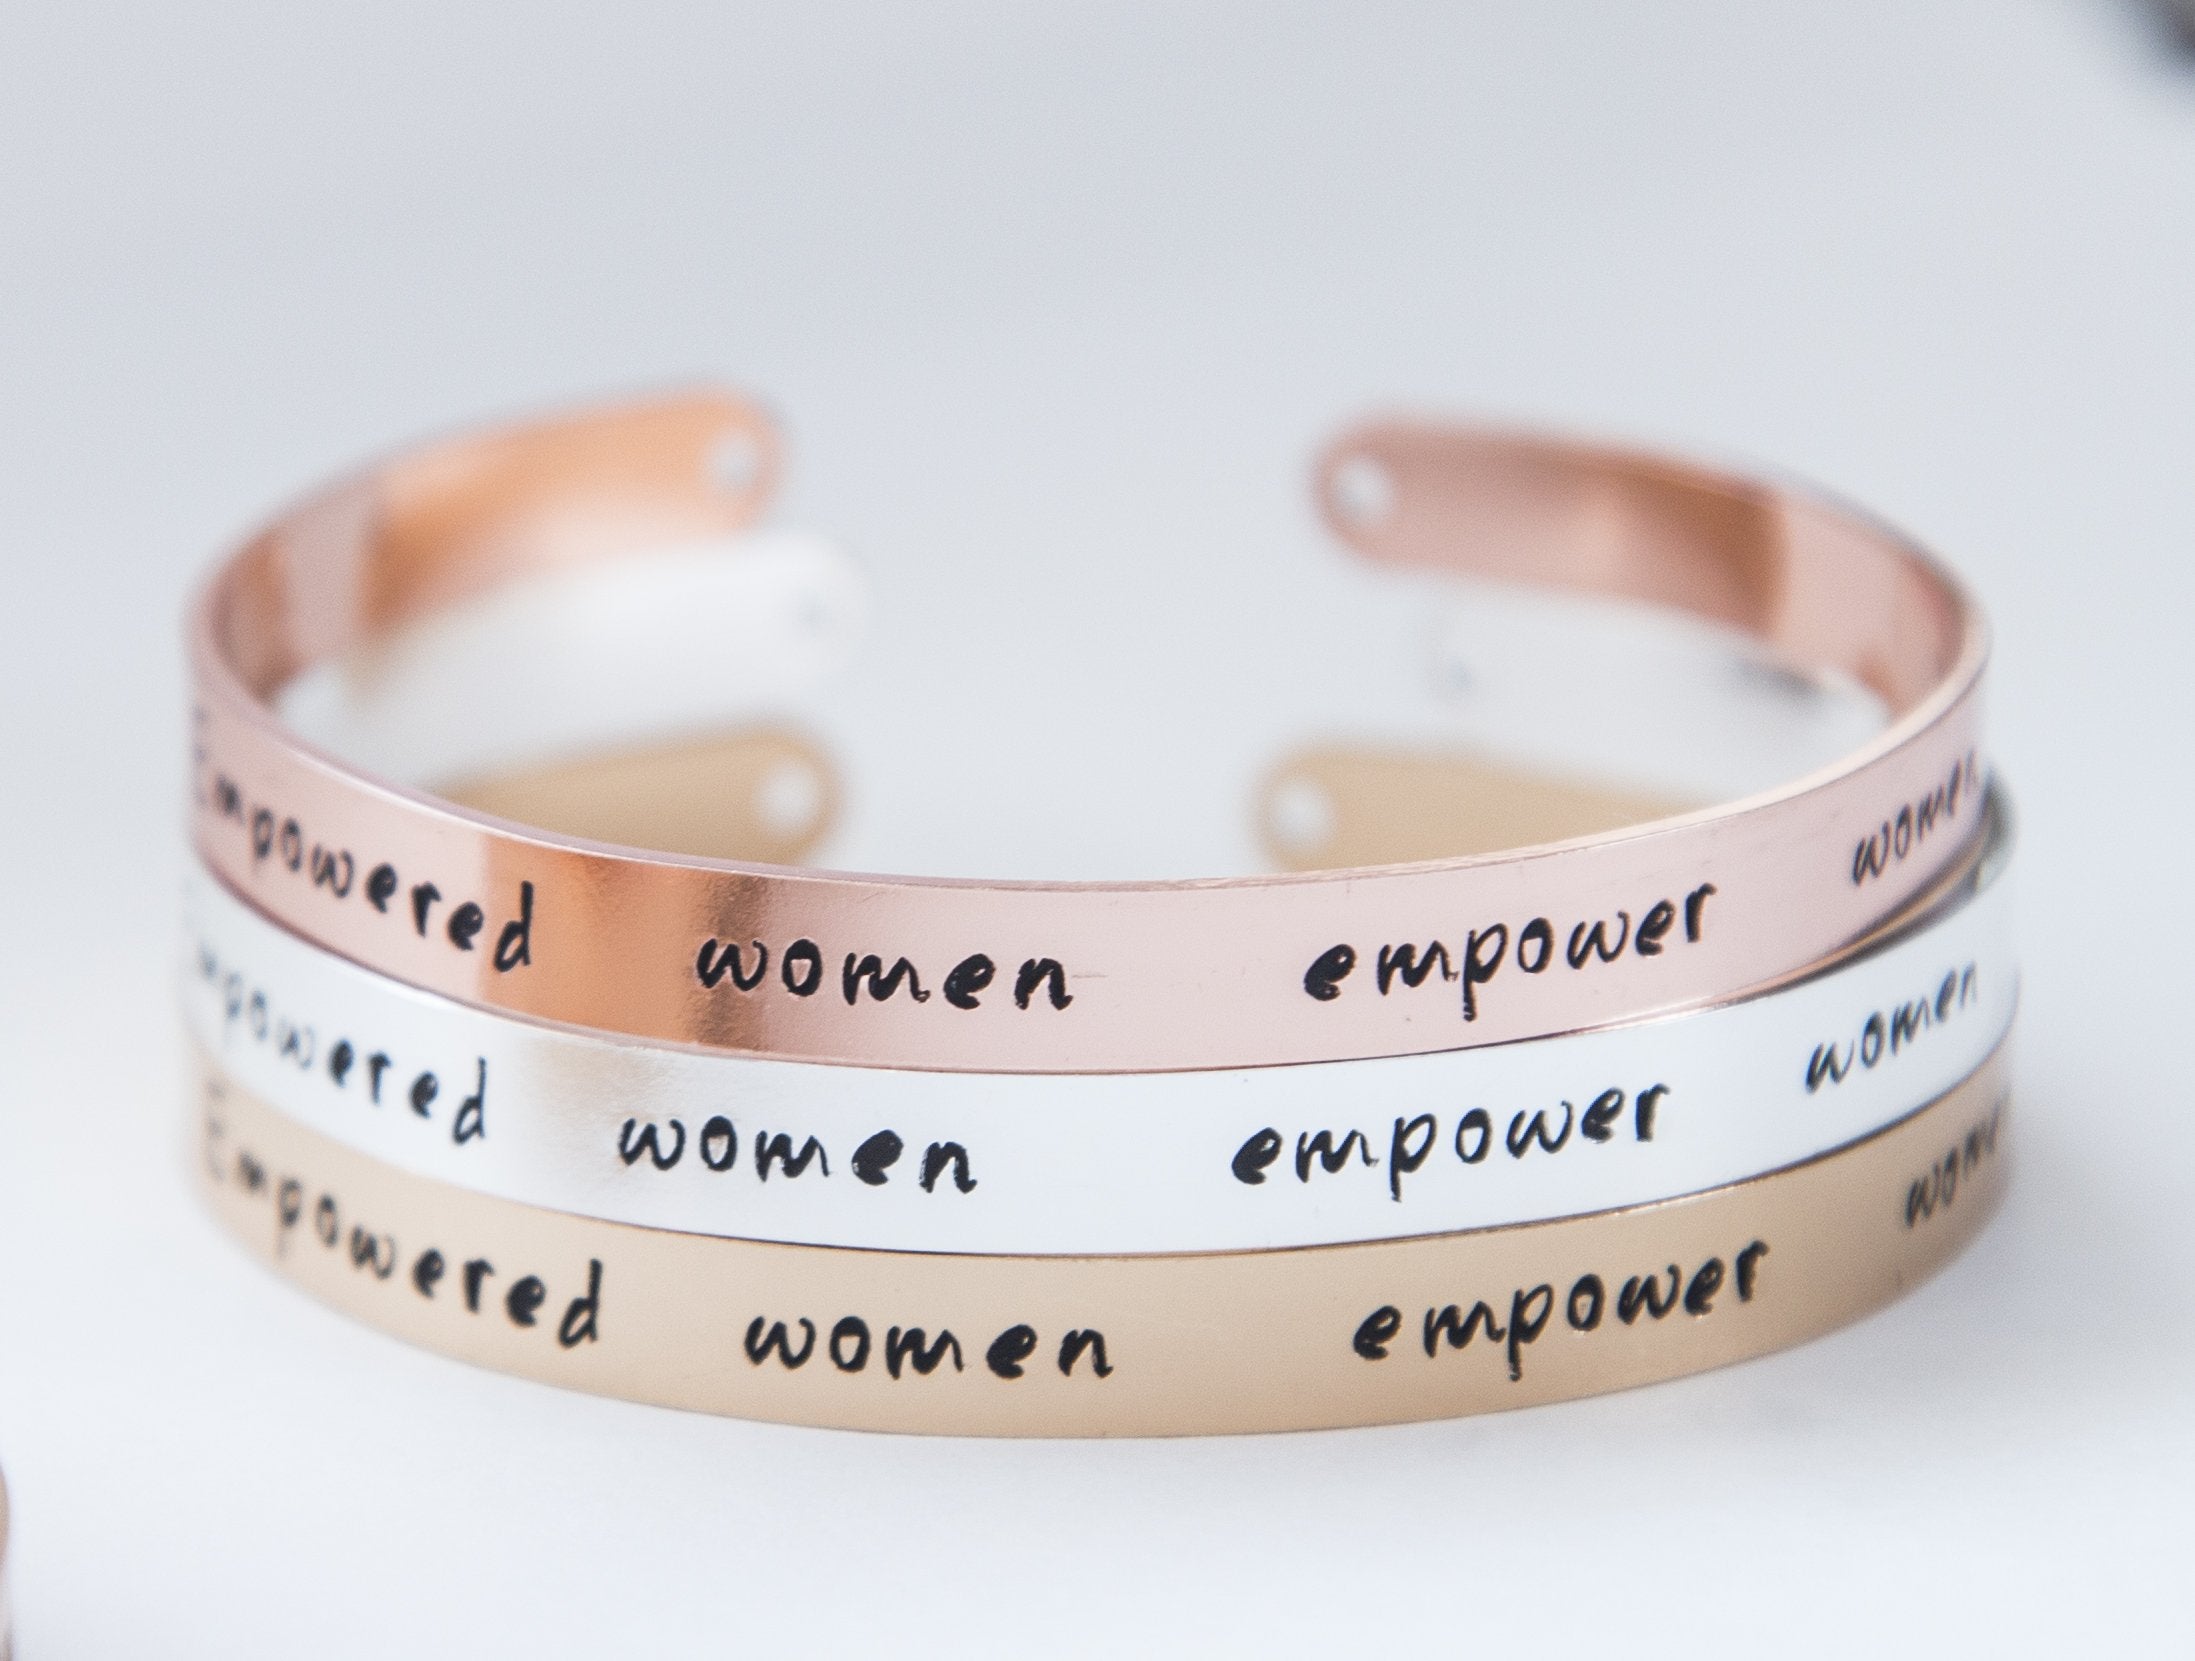 Empowered women jewelry, women empowerment feminist gift, hand